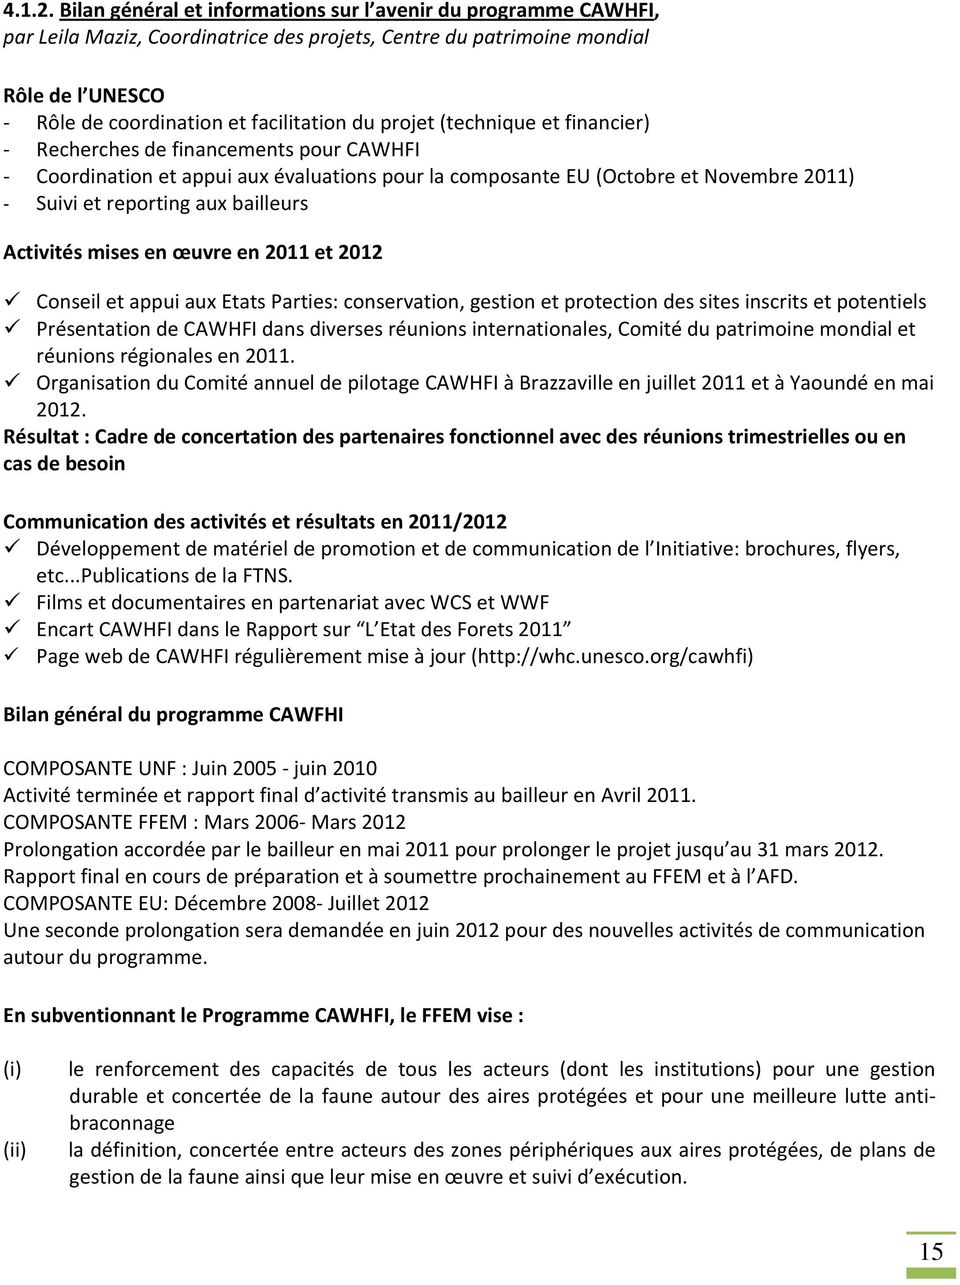 projet (technique et financier) Recherches de financements pour CAWHFI Coordination et appui aux évaluations pour la composante EU (Octobre et Novembre 2011) Suivi et reporting aux bailleurs